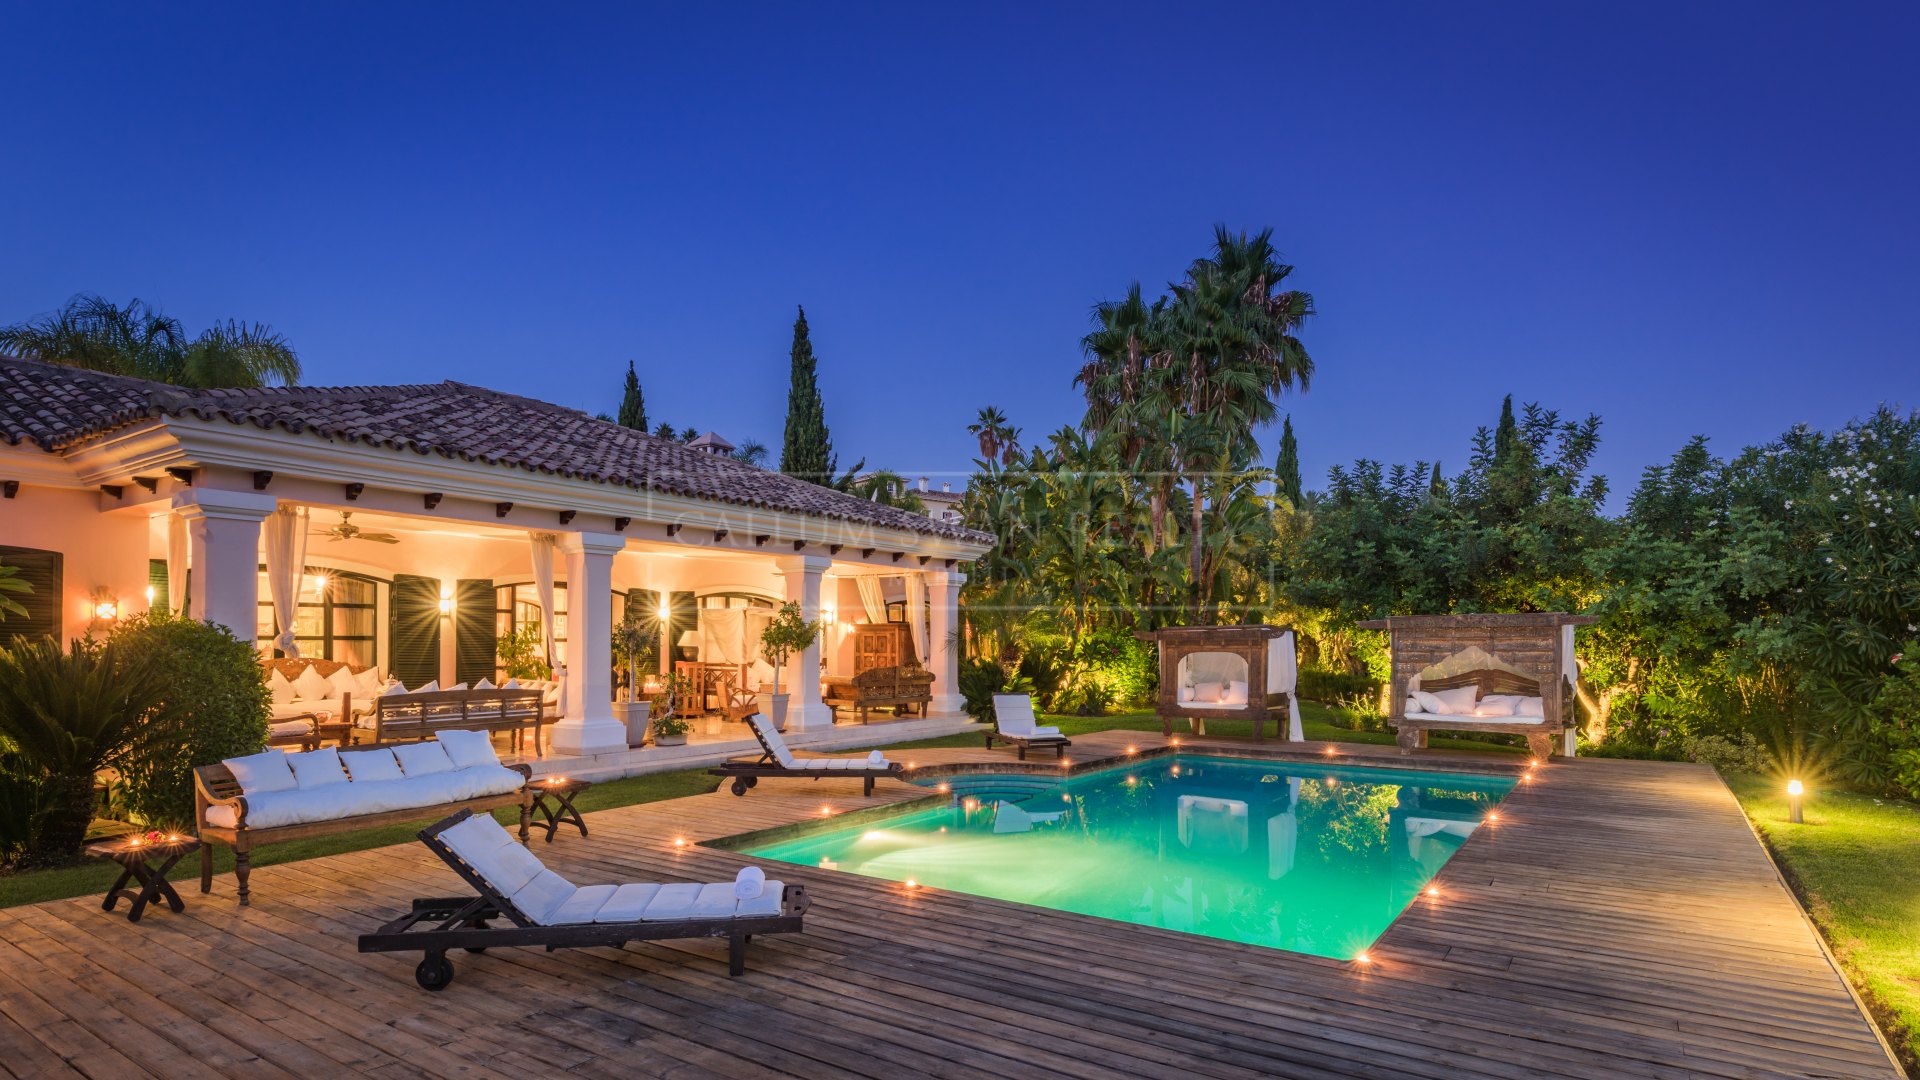 Espectacular villa de lujo con estilo Andaluz en una urbanización cerrada